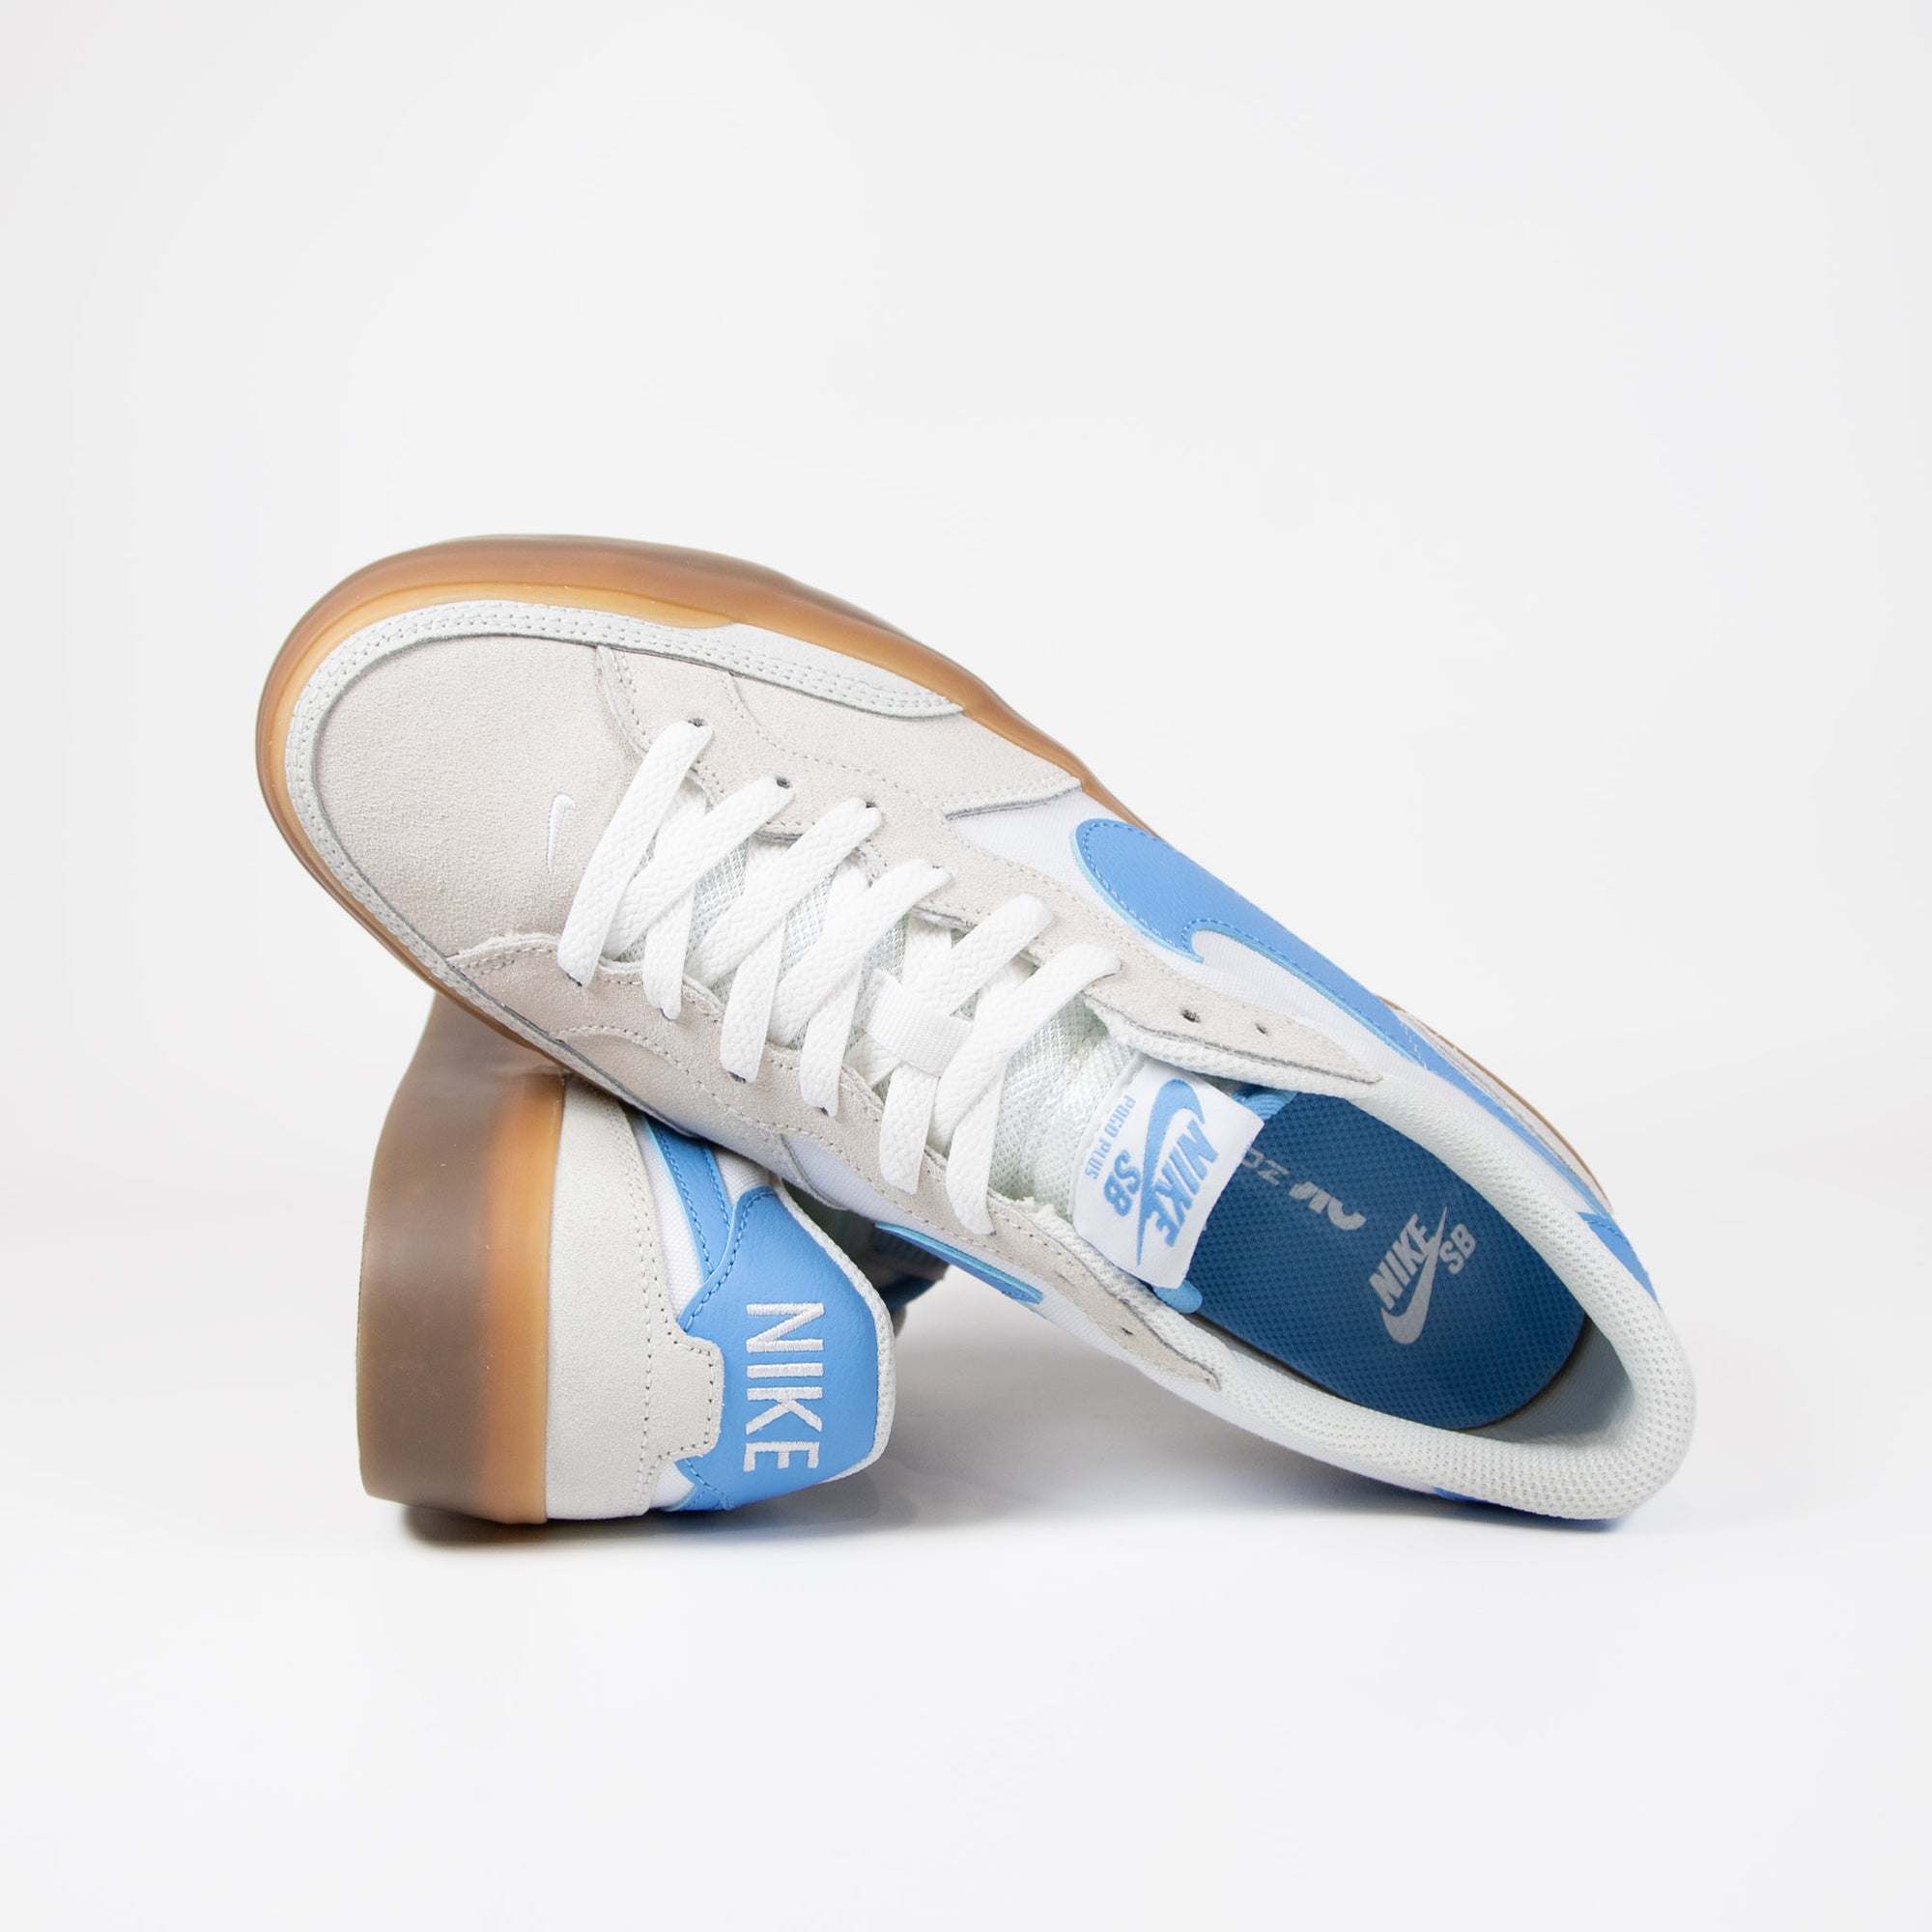 Nike SB - Pogo Premium Shoes - Summit White / University Blue